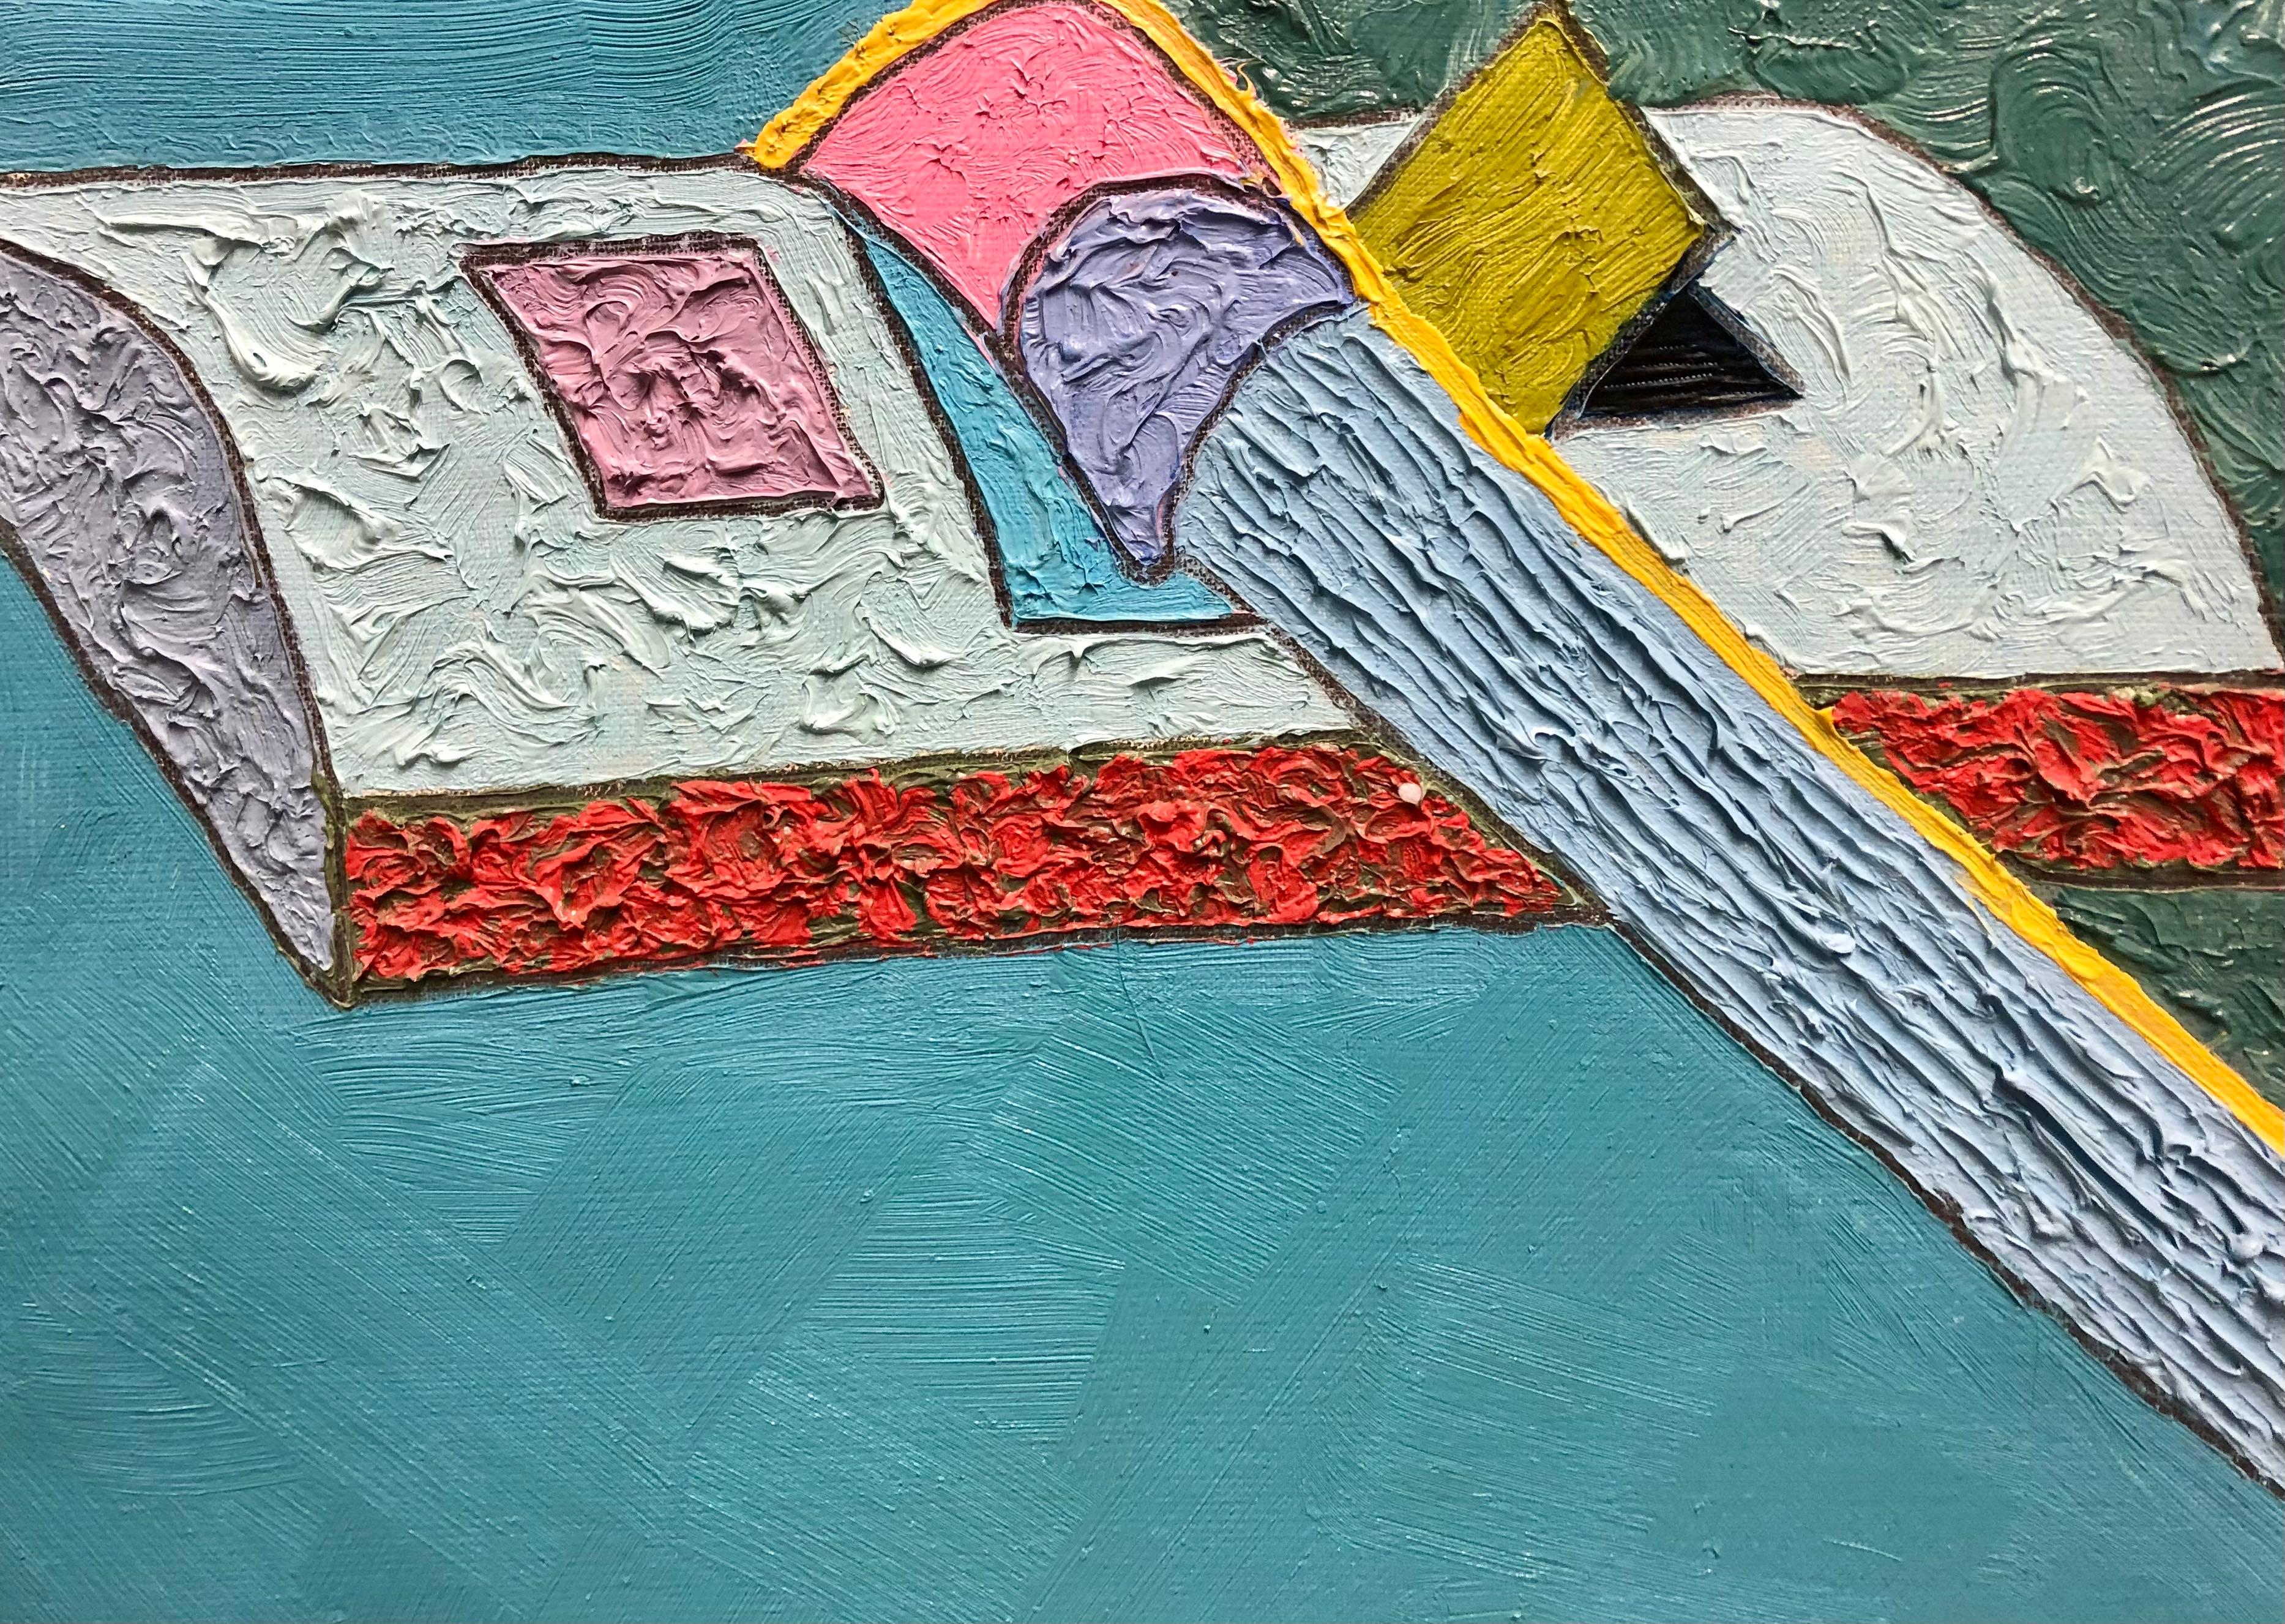 Helles, farbenfrohes, strukturiertes Ölgemälde eines Stilllebens der ungarischen Künstlerin Eszter Radák (geb. 1971). 

Öl auf Leinwand, 40 x 40 cm. Signiert auf der Rückseite. Wird ungerahmt angeboten.

Eszter Radák ist eine vibrierende Kraft in